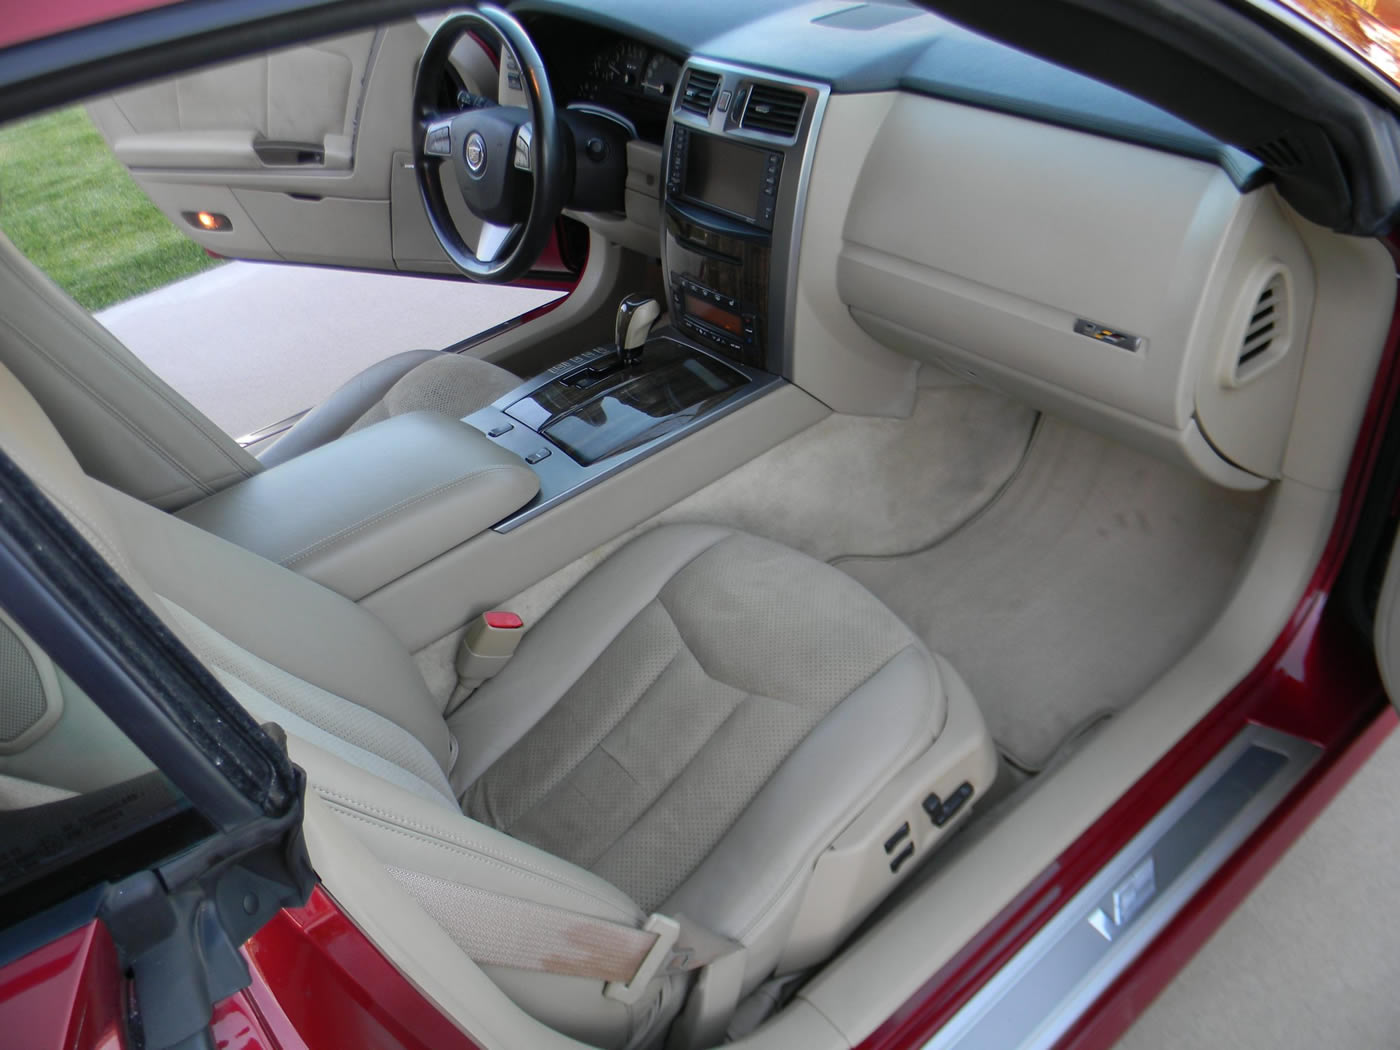 2008 Cadillac XLR-V in Crystal Red Metallic